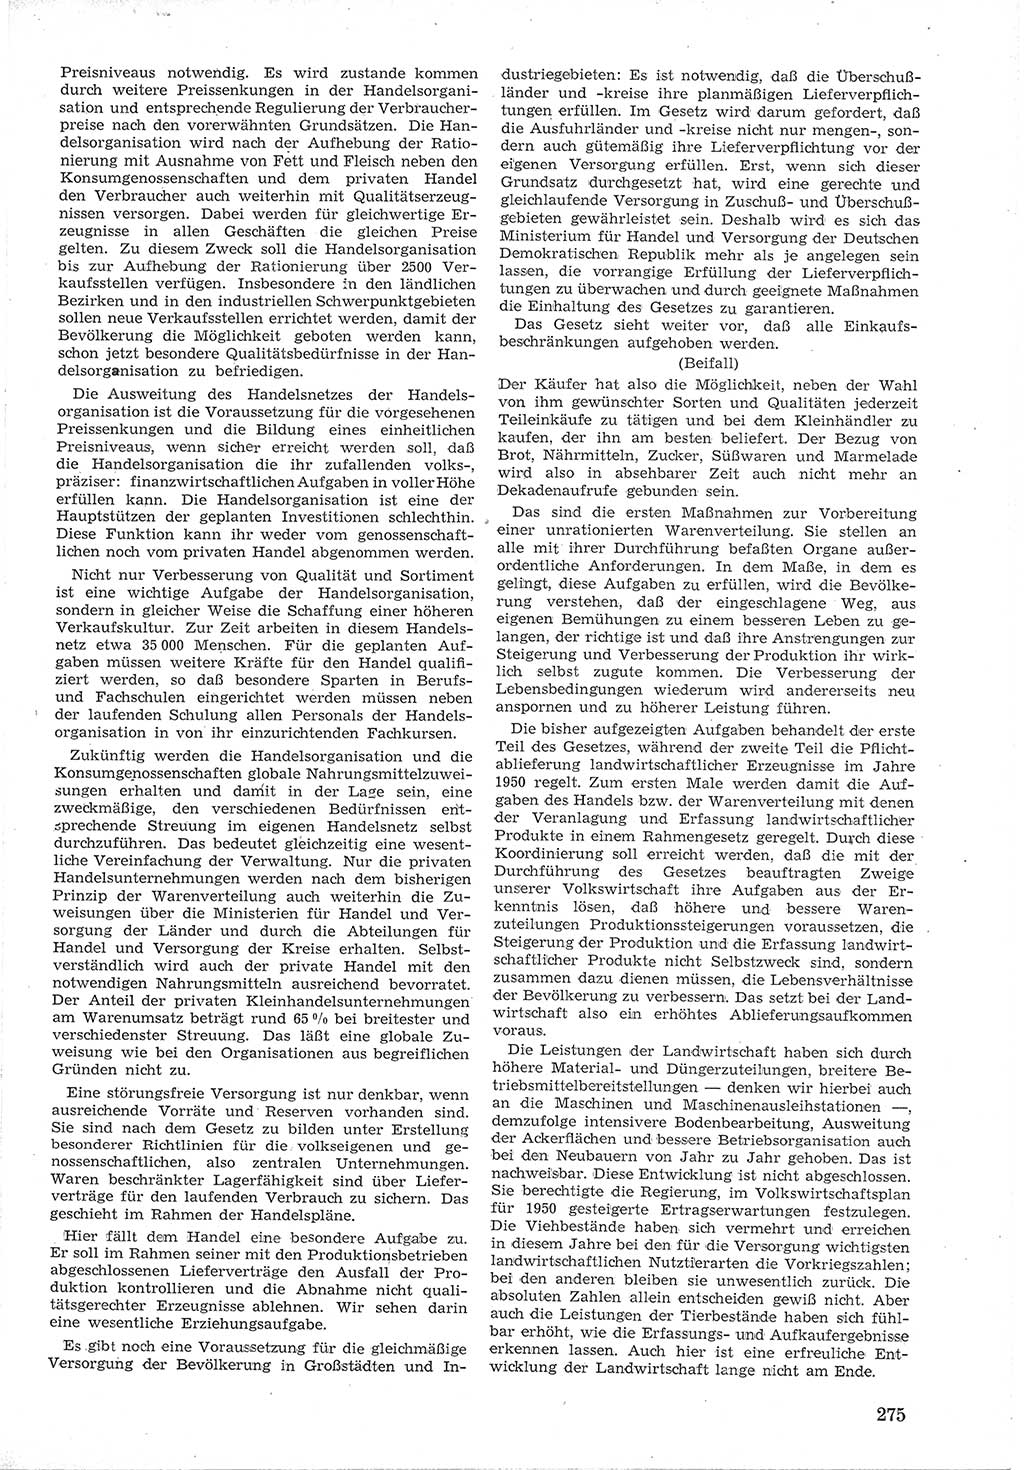 Provisorische Volkskammer (VK) der Deutschen Demokratischen Republik (DDR) 1949-1950, Dokument 289 (Prov. VK DDR 1949-1950, Dok. 289)